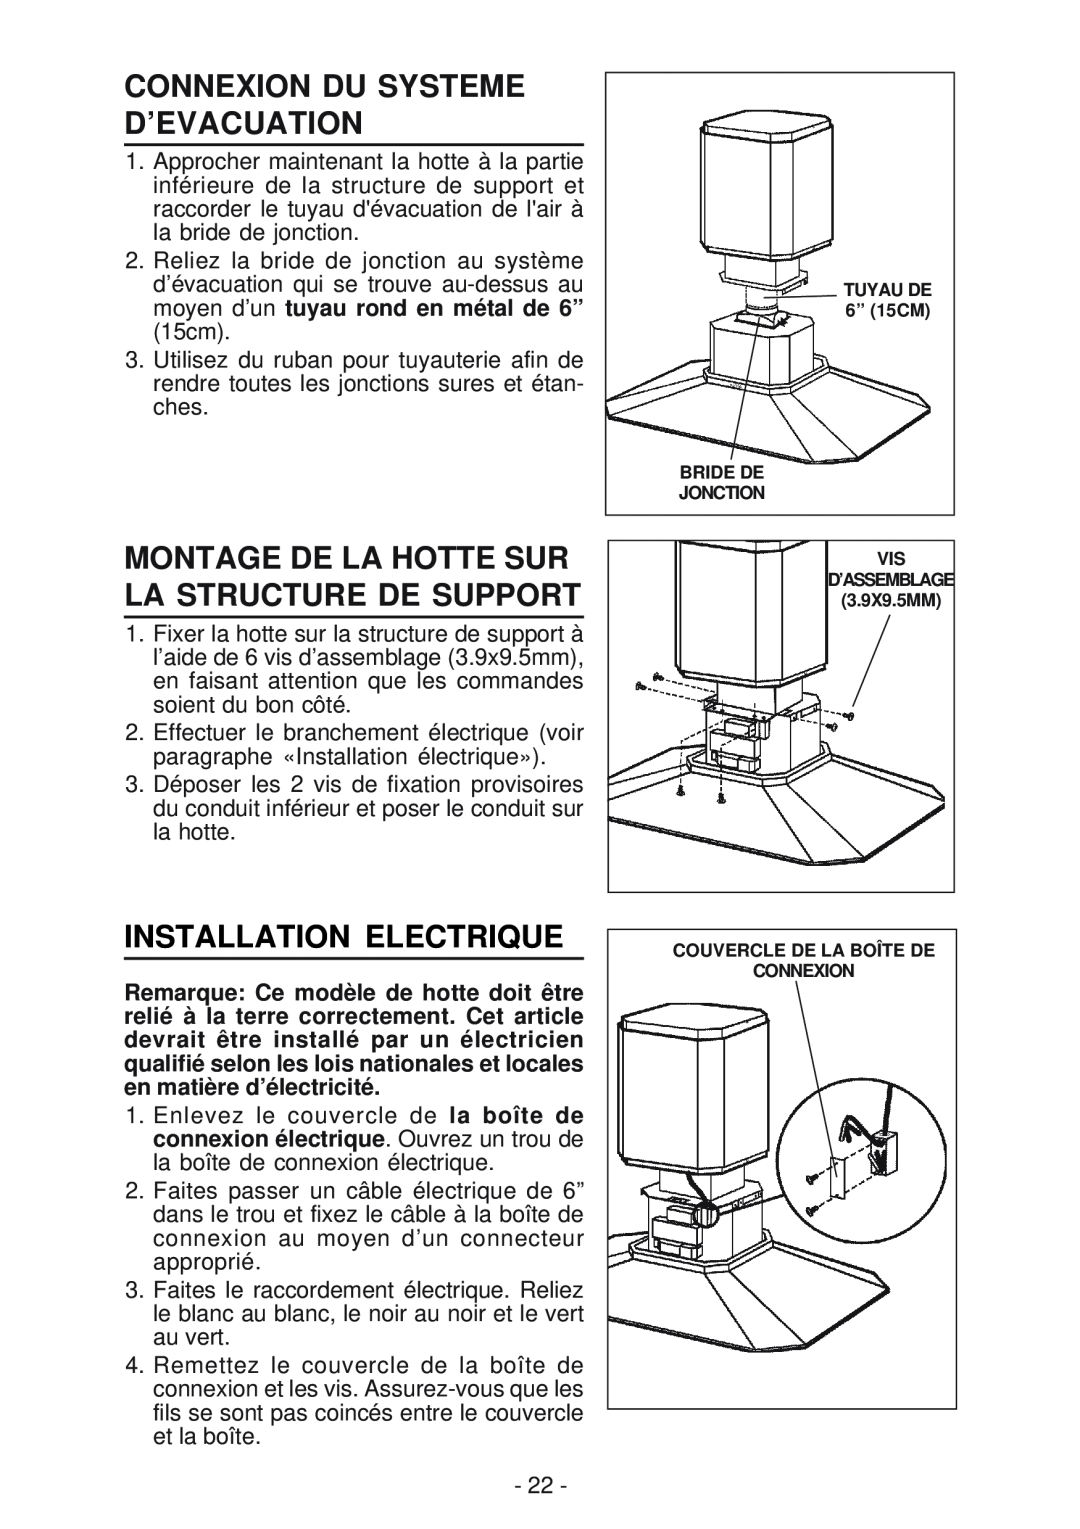 Best IS170 Connexion Du Systeme D’Evacuation, Montage De La Hotte Sur La Structure De Support, Installation Electrique 